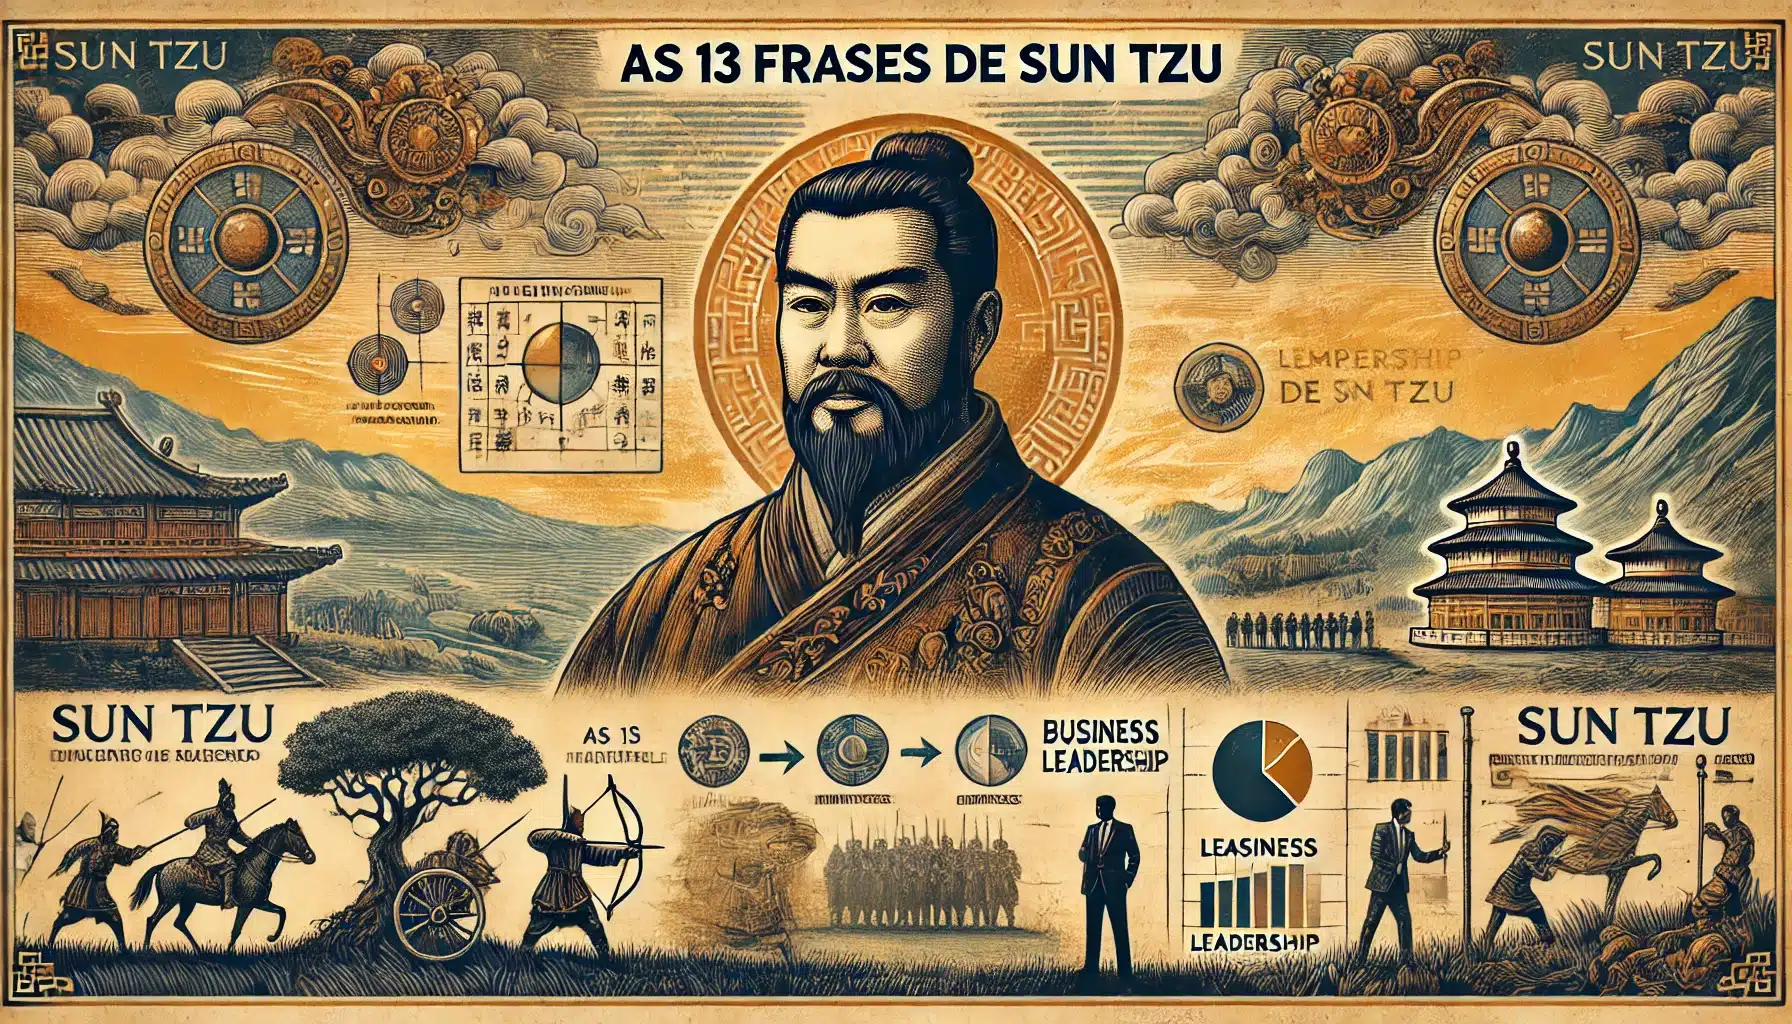 As 13 frases de Sun Tzu que podem transformar sua vida e carreira. Leia nosso artigo completo e aprenda a aplicar essas lições poderosas!